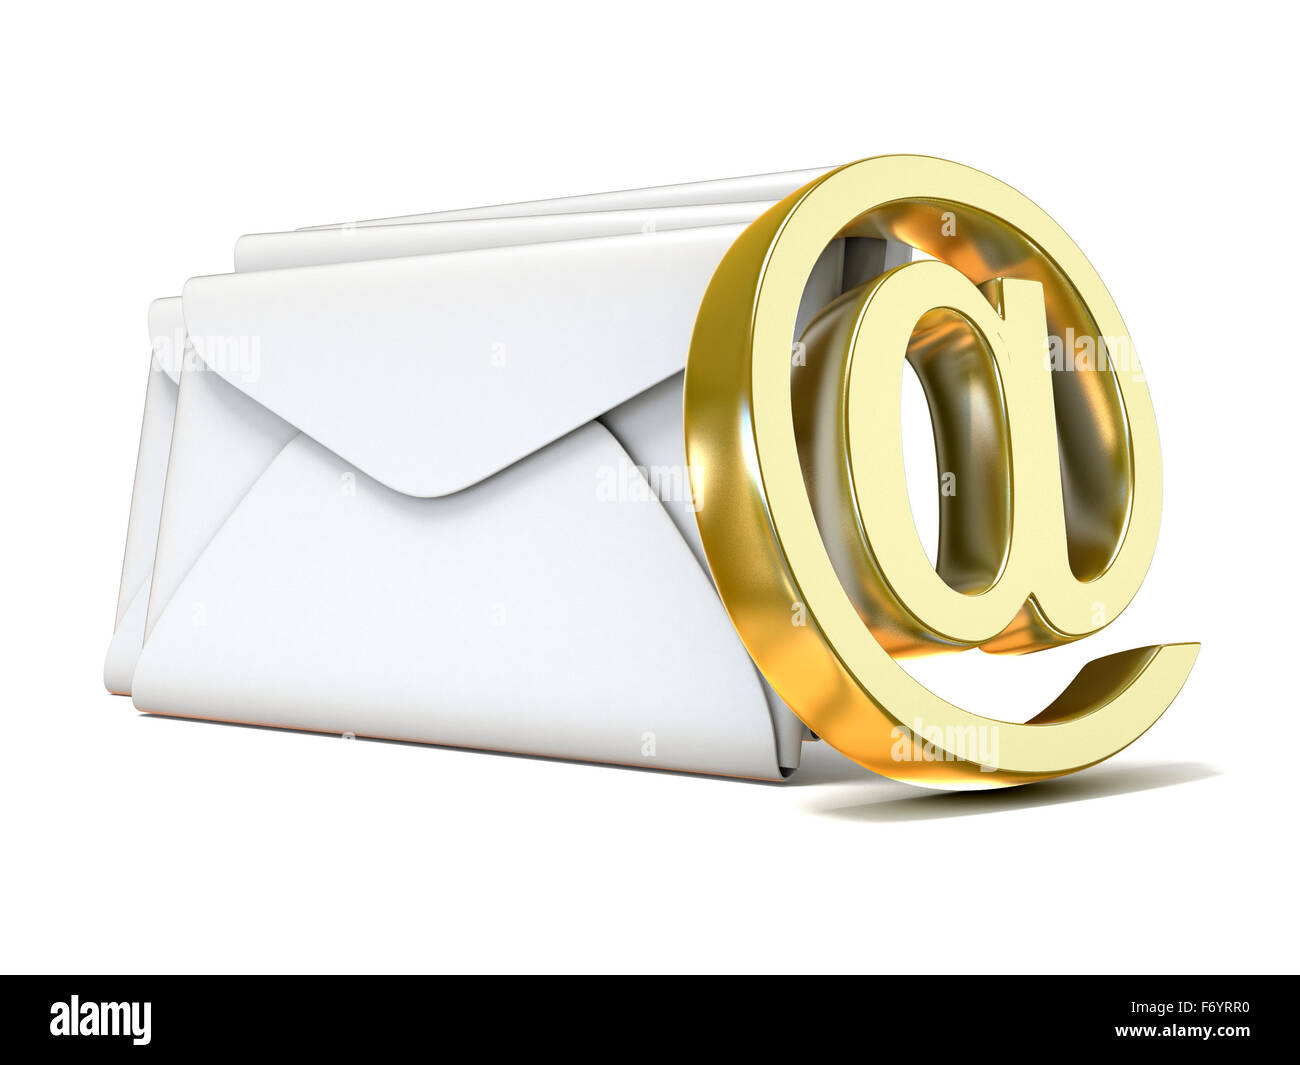 Enveloppes avec golden abonnement courriel. Rendu 3D illustration isolé sur fond blanc Banque D'Images